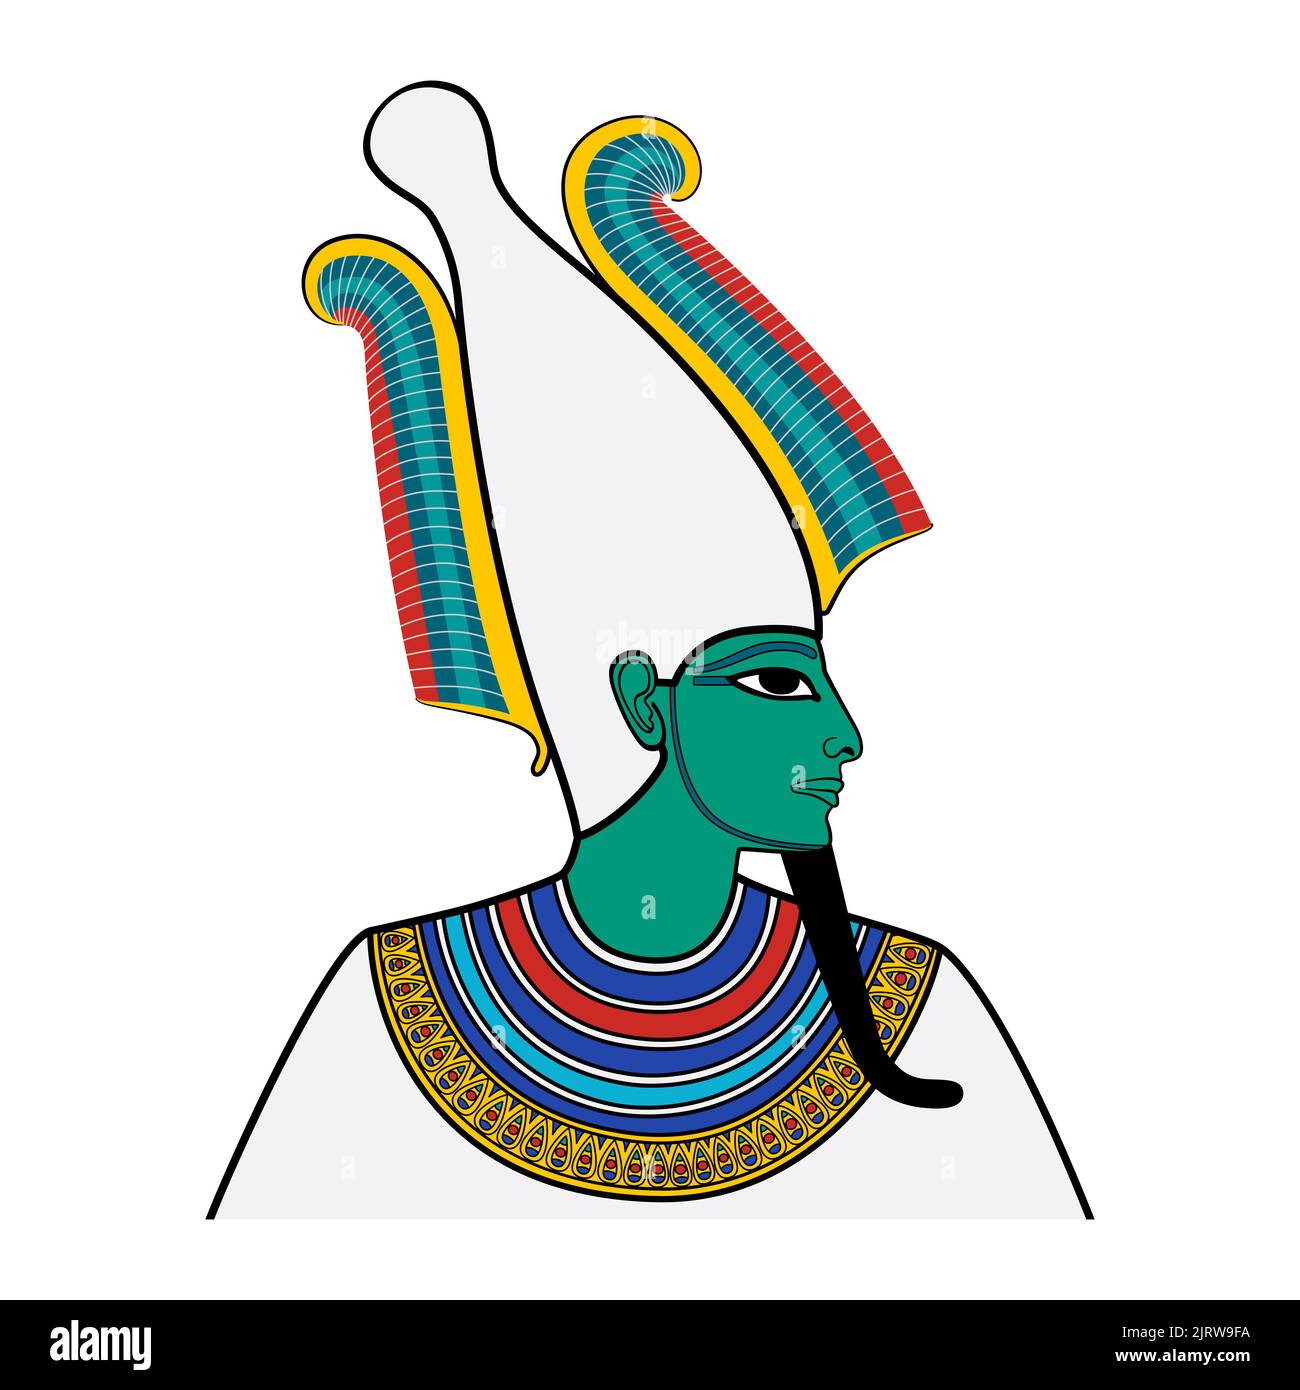 Osris, Porträt des gottes des Jenseits, der Toten und der Auferstehung im alten Ägypten. Dargestellt mit grünlich türkisfarbener Haut, pharaonbart und Atef-Krone. Stockfoto